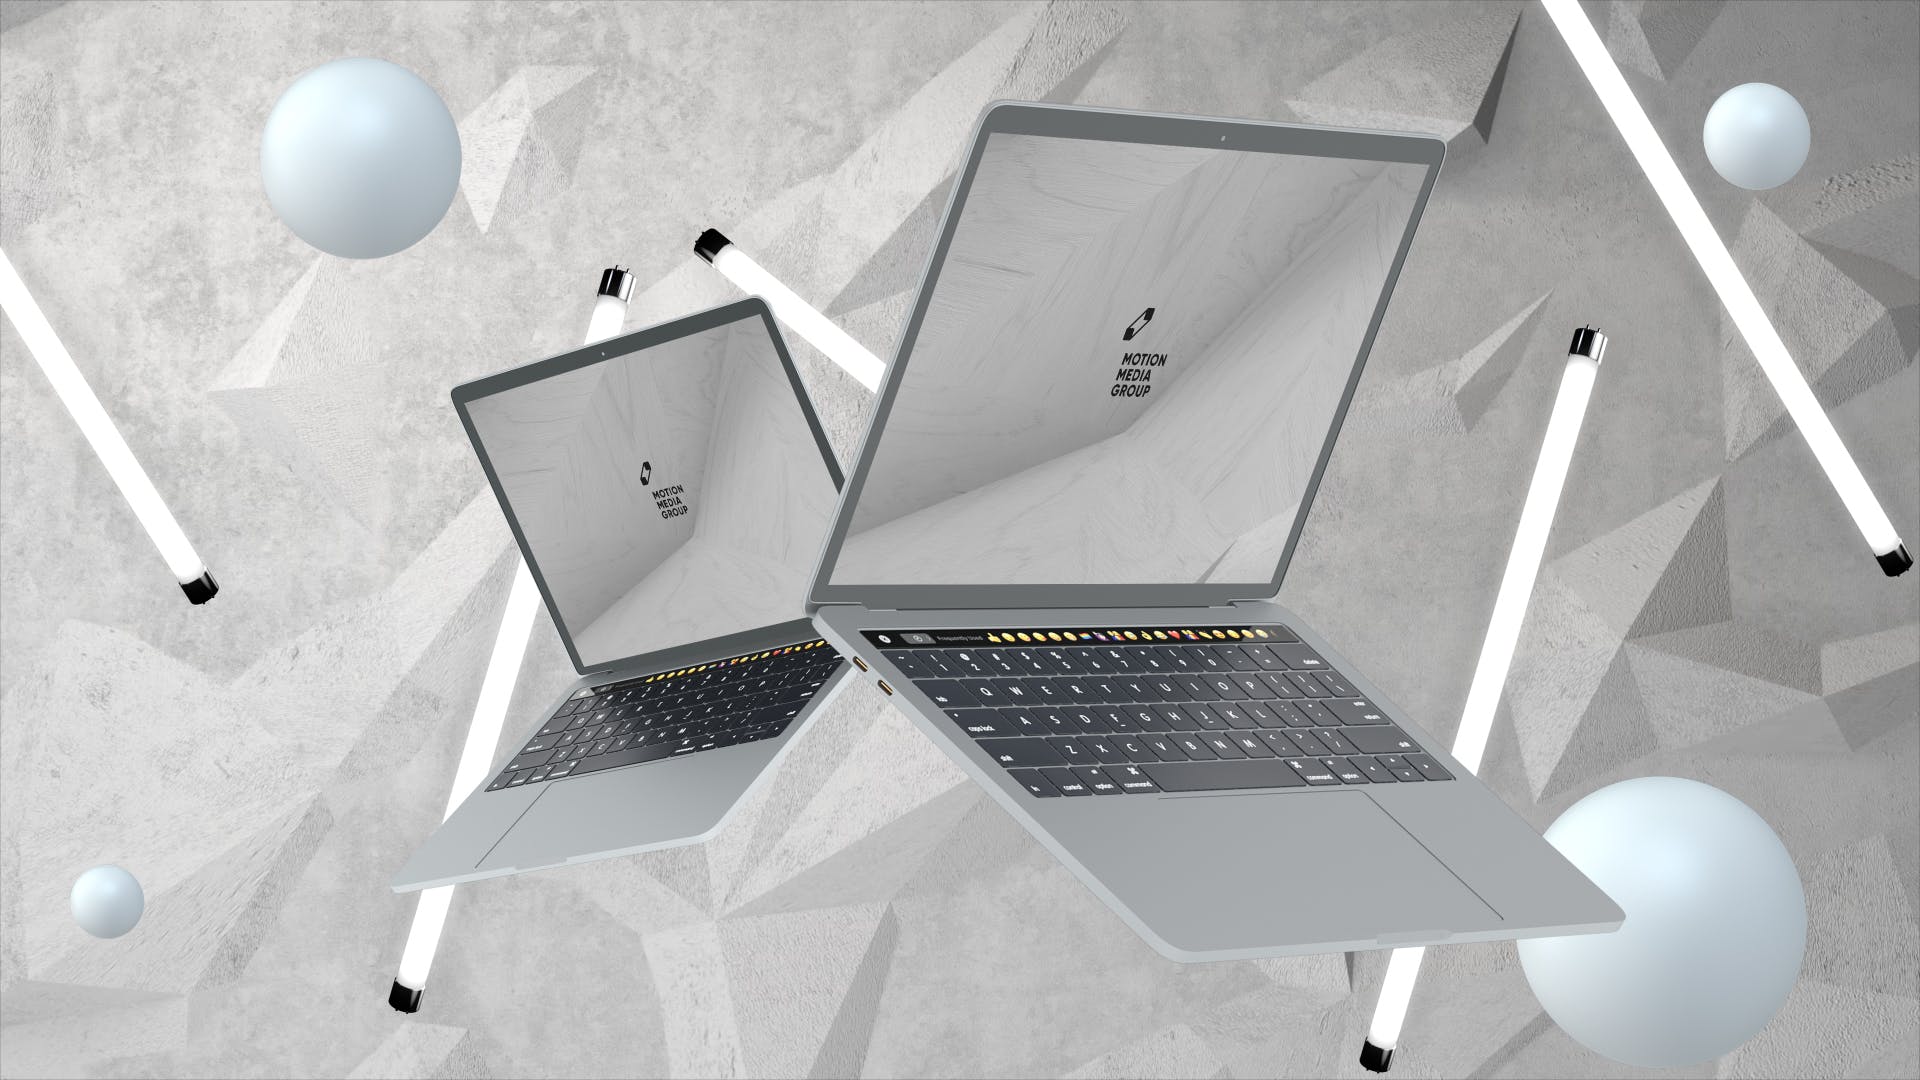 优雅时尚风格3D立体风格笔记本电脑屏幕预览素材库精选样机 10 Light Laptop Mockups插图(10)